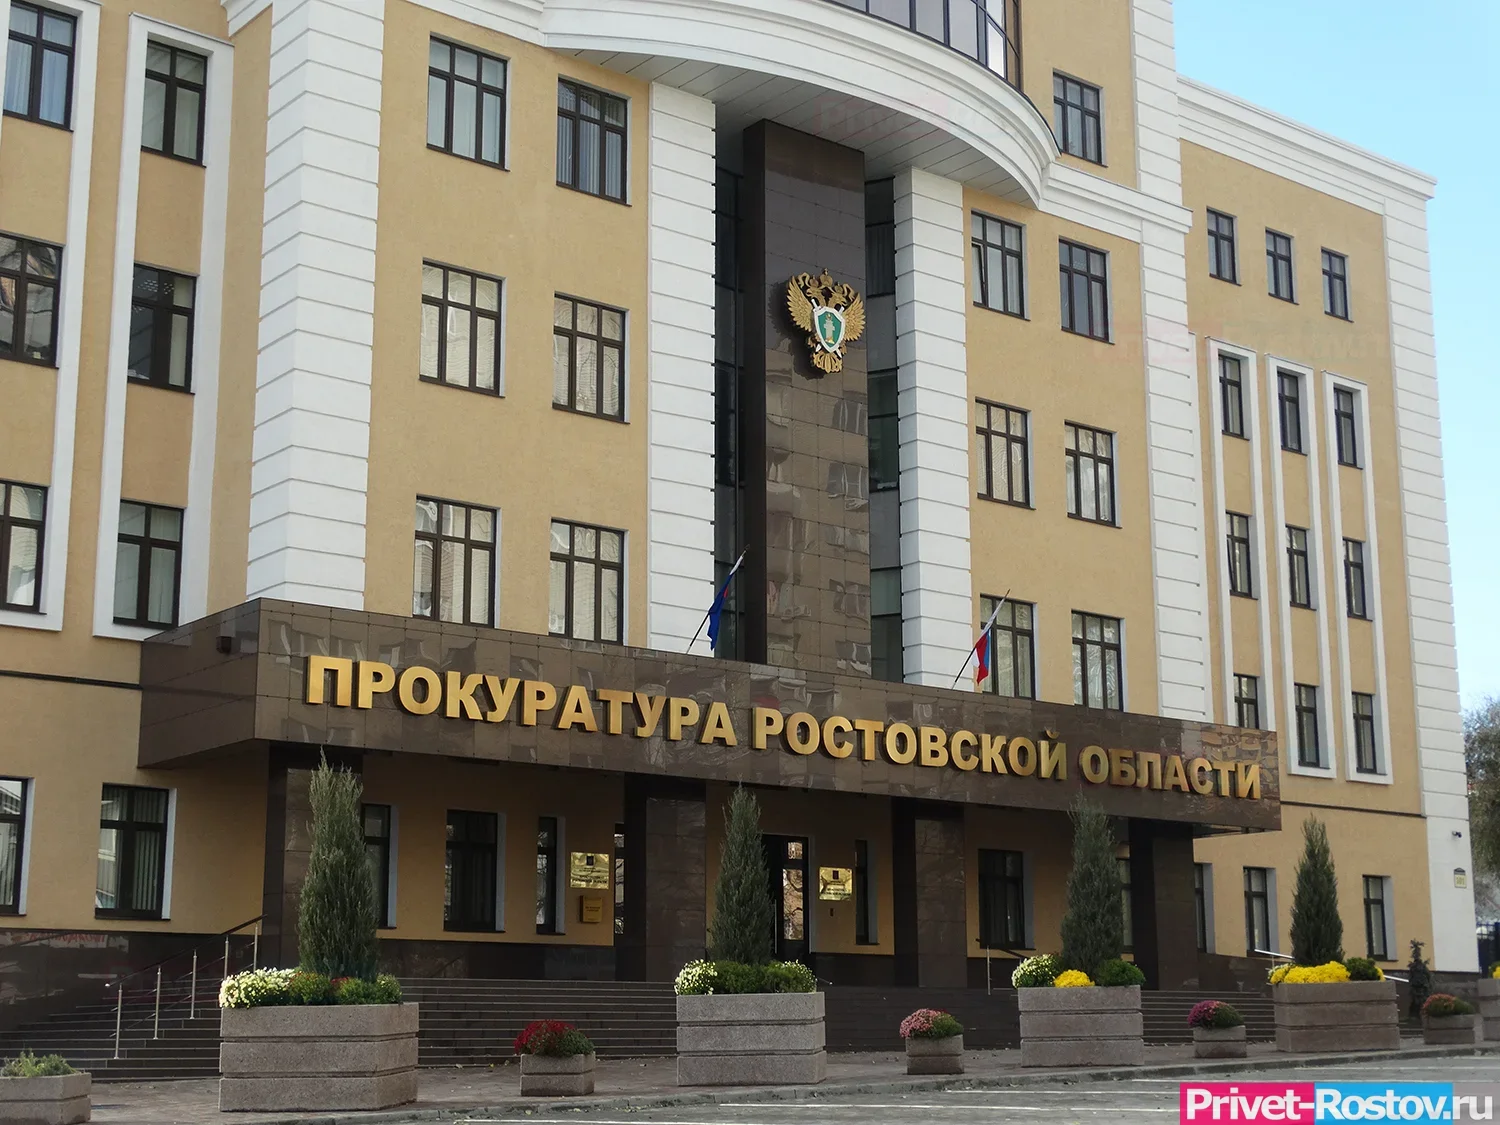 Прокурор Запорожец назвал самый криминальный район в Ростове-на-Дону